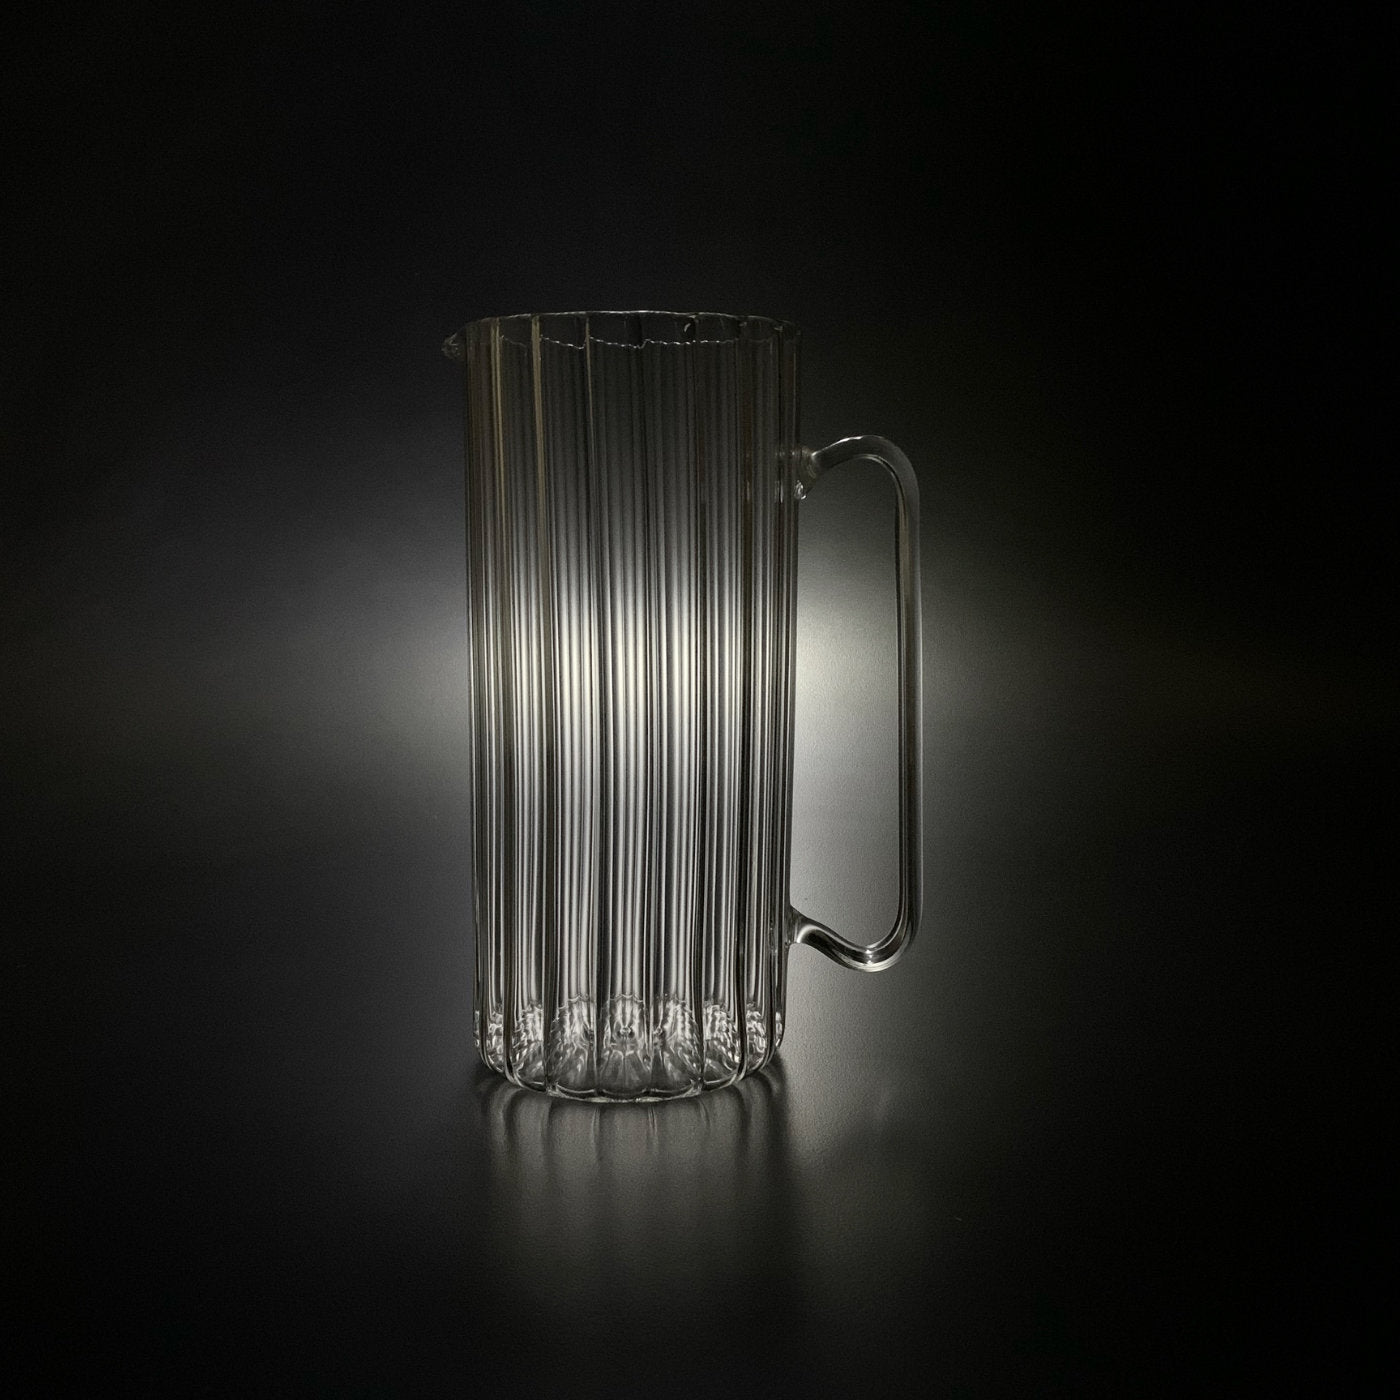 Serlio Transparent Glass Pitcher - Alternative view 1